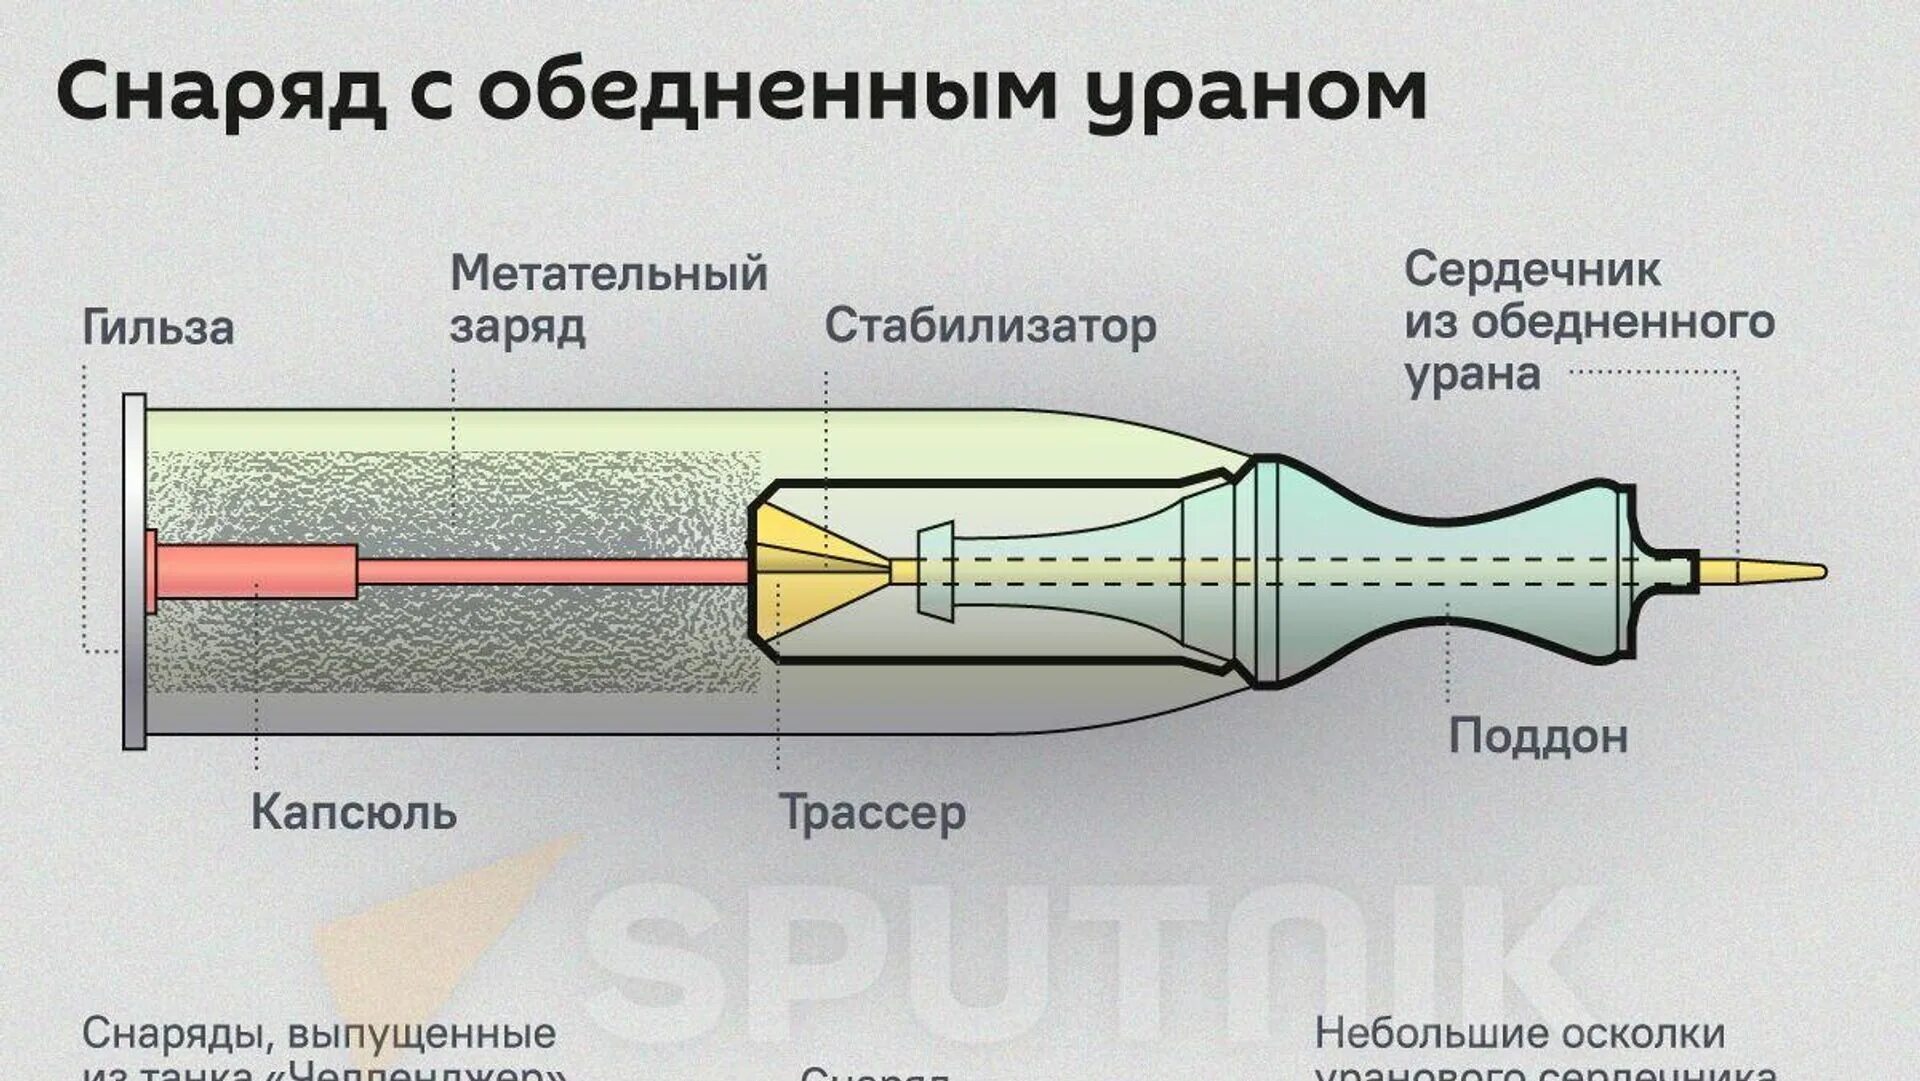 Обедненный уран на украине. Снаряд с урановым сердечником схема. Танковый снаряд с урановым сердечником. Танковые снаряды с ураном. Снаряды с обедненным ураном.